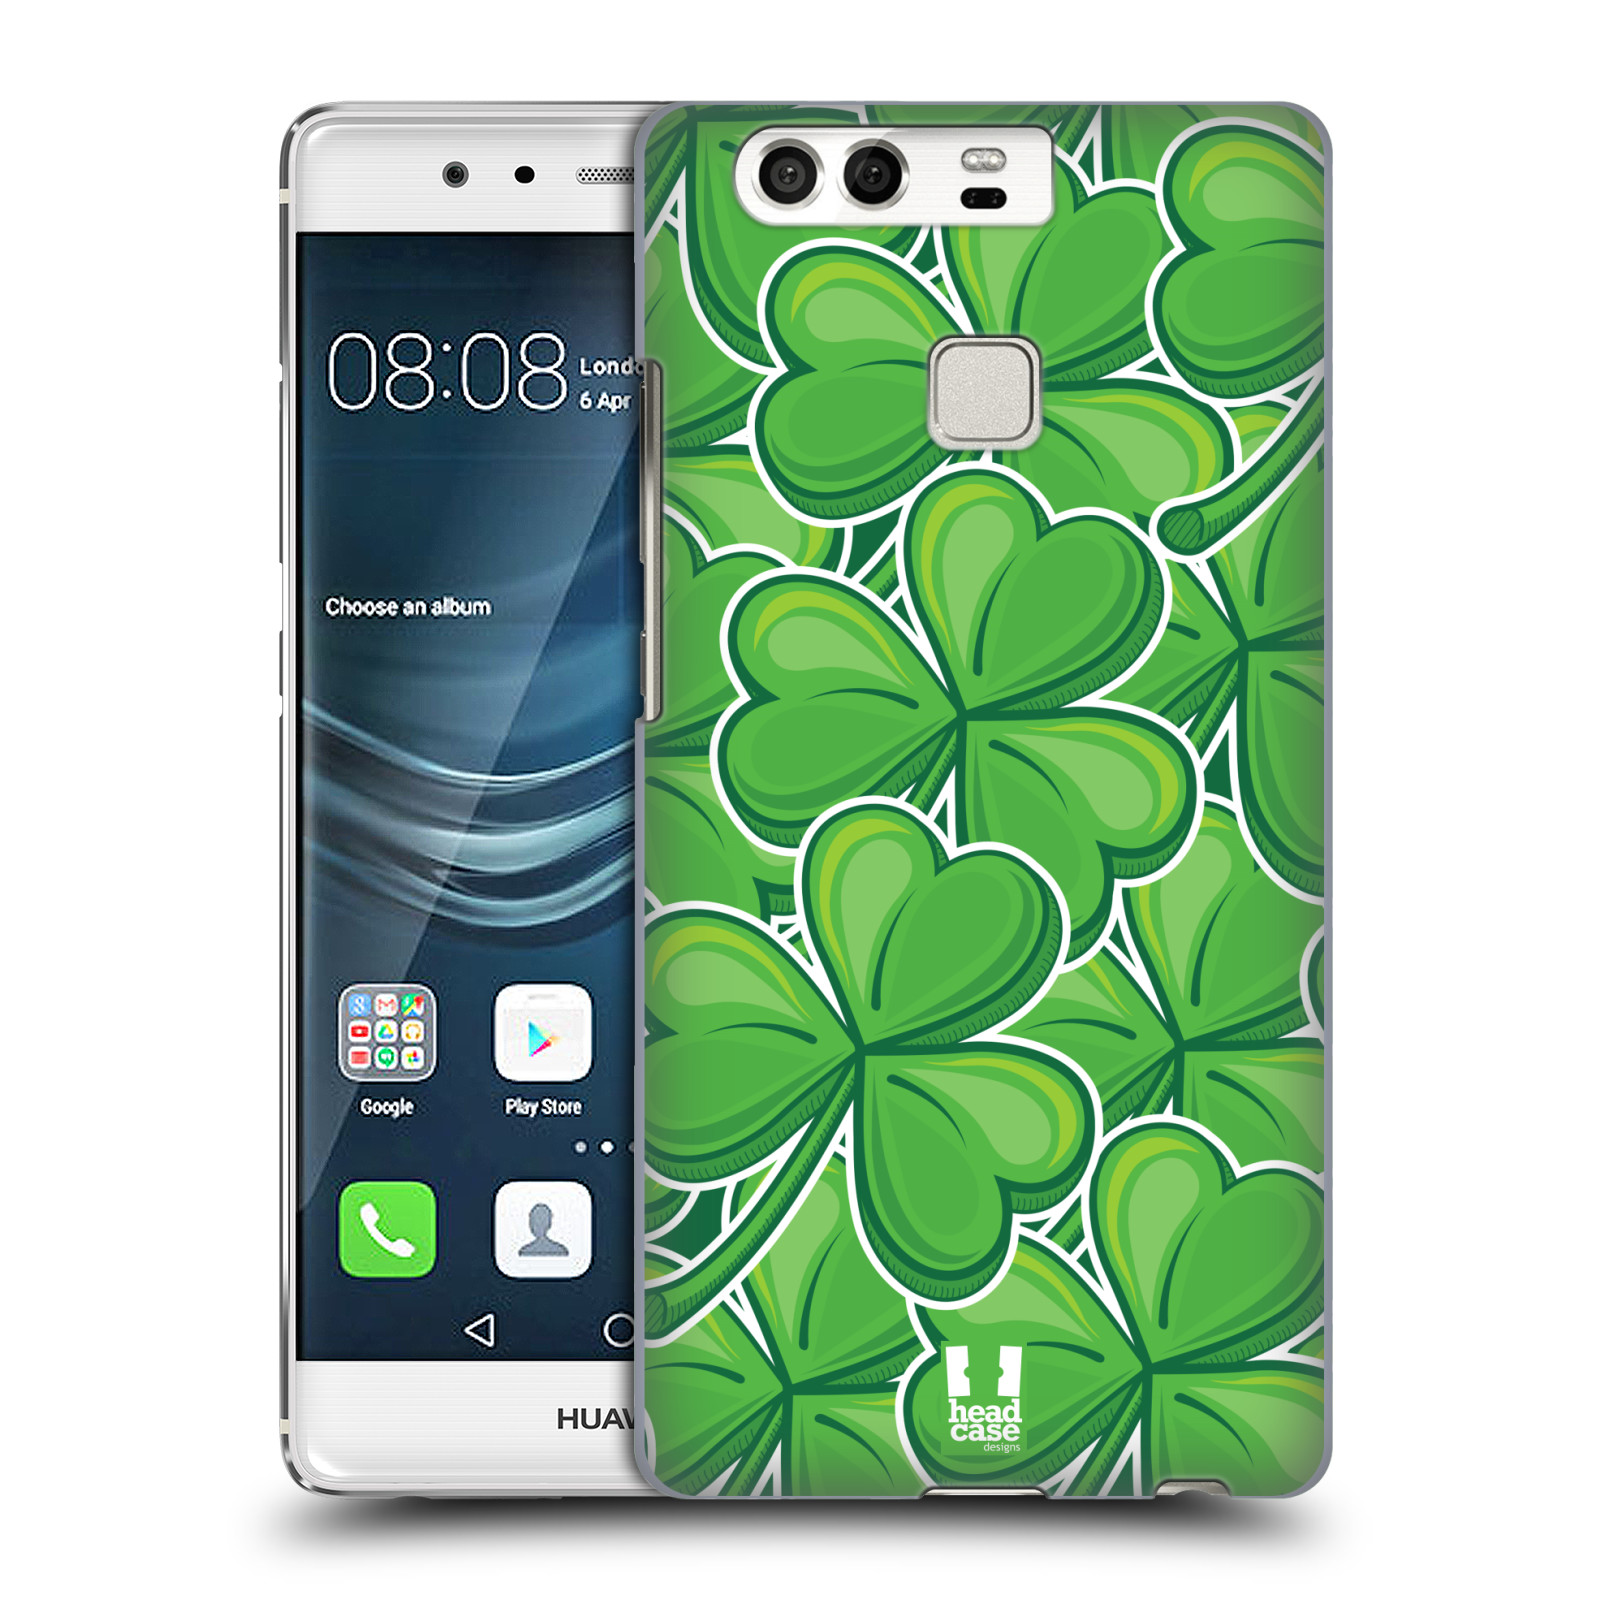 HEAD CASE plastový obal na mobil Huawei P9 / P9 DUAL SIM vzor Kreslený čyřlístek zelená VELKÉ LÍSTEČKY